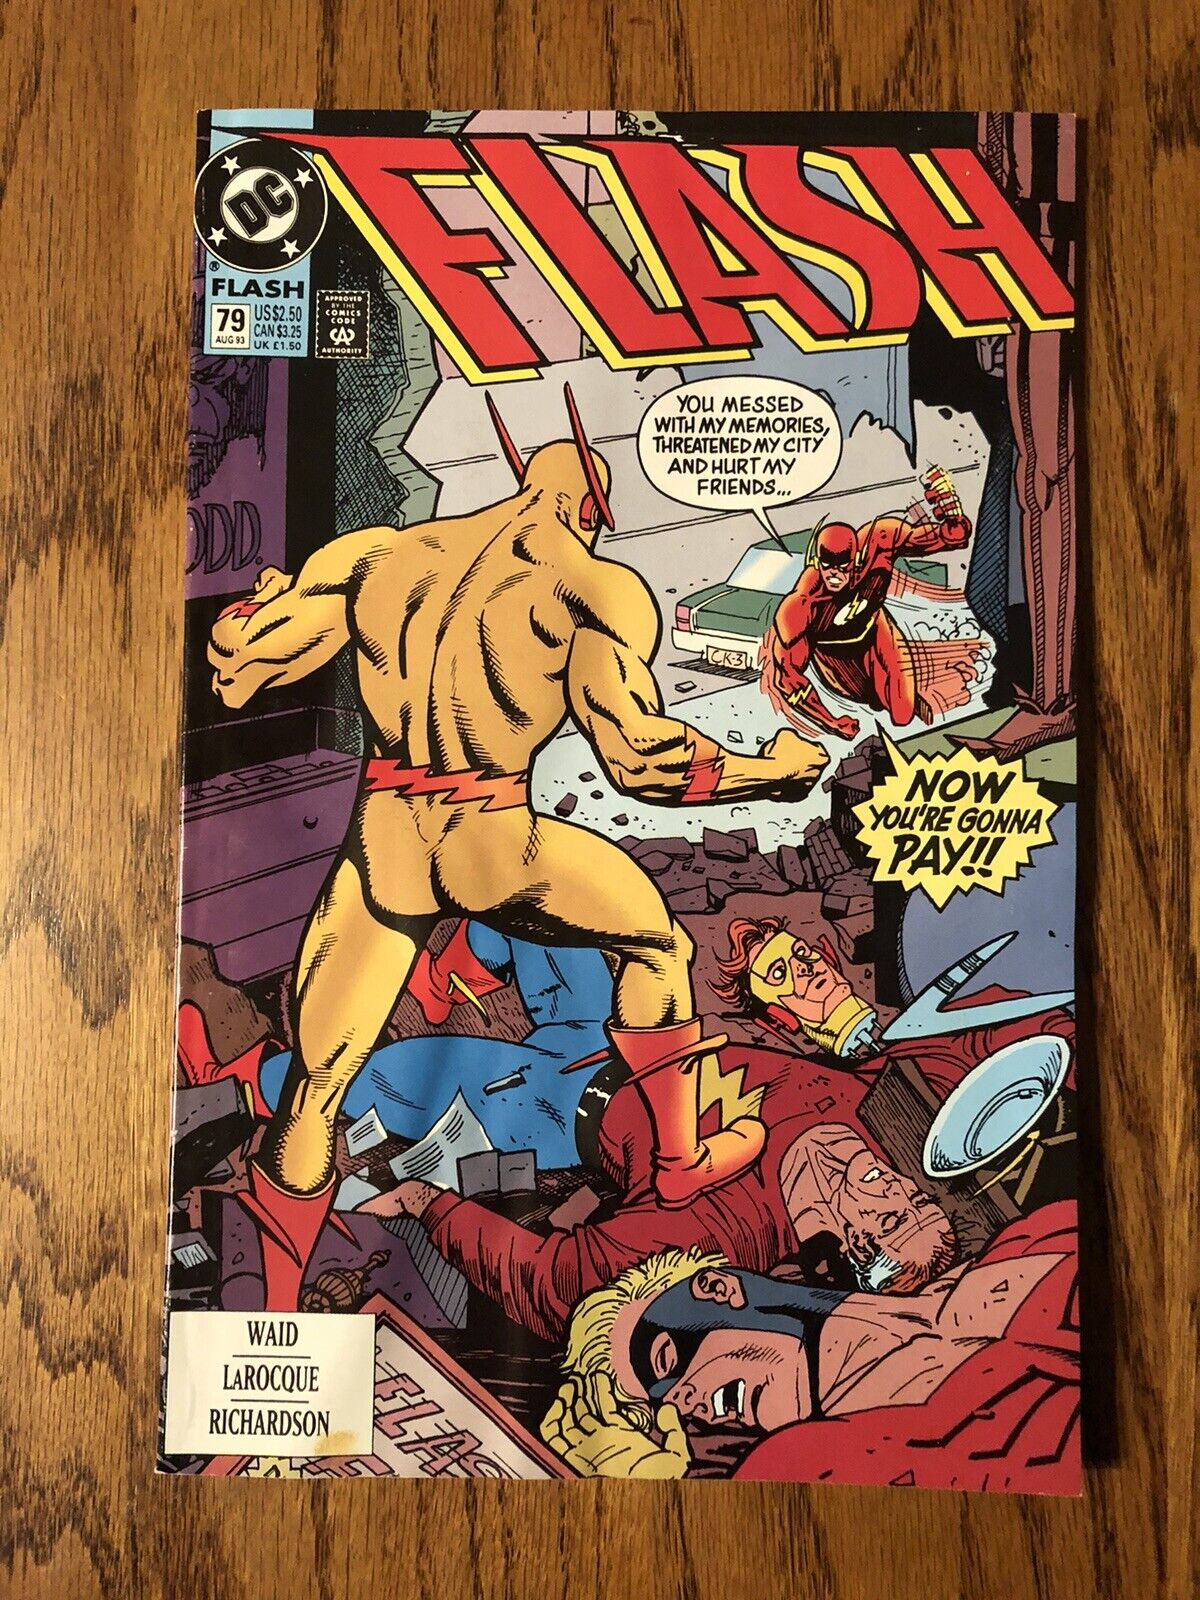 Flash #79, Vol. 2 (DC Comics, 1993)